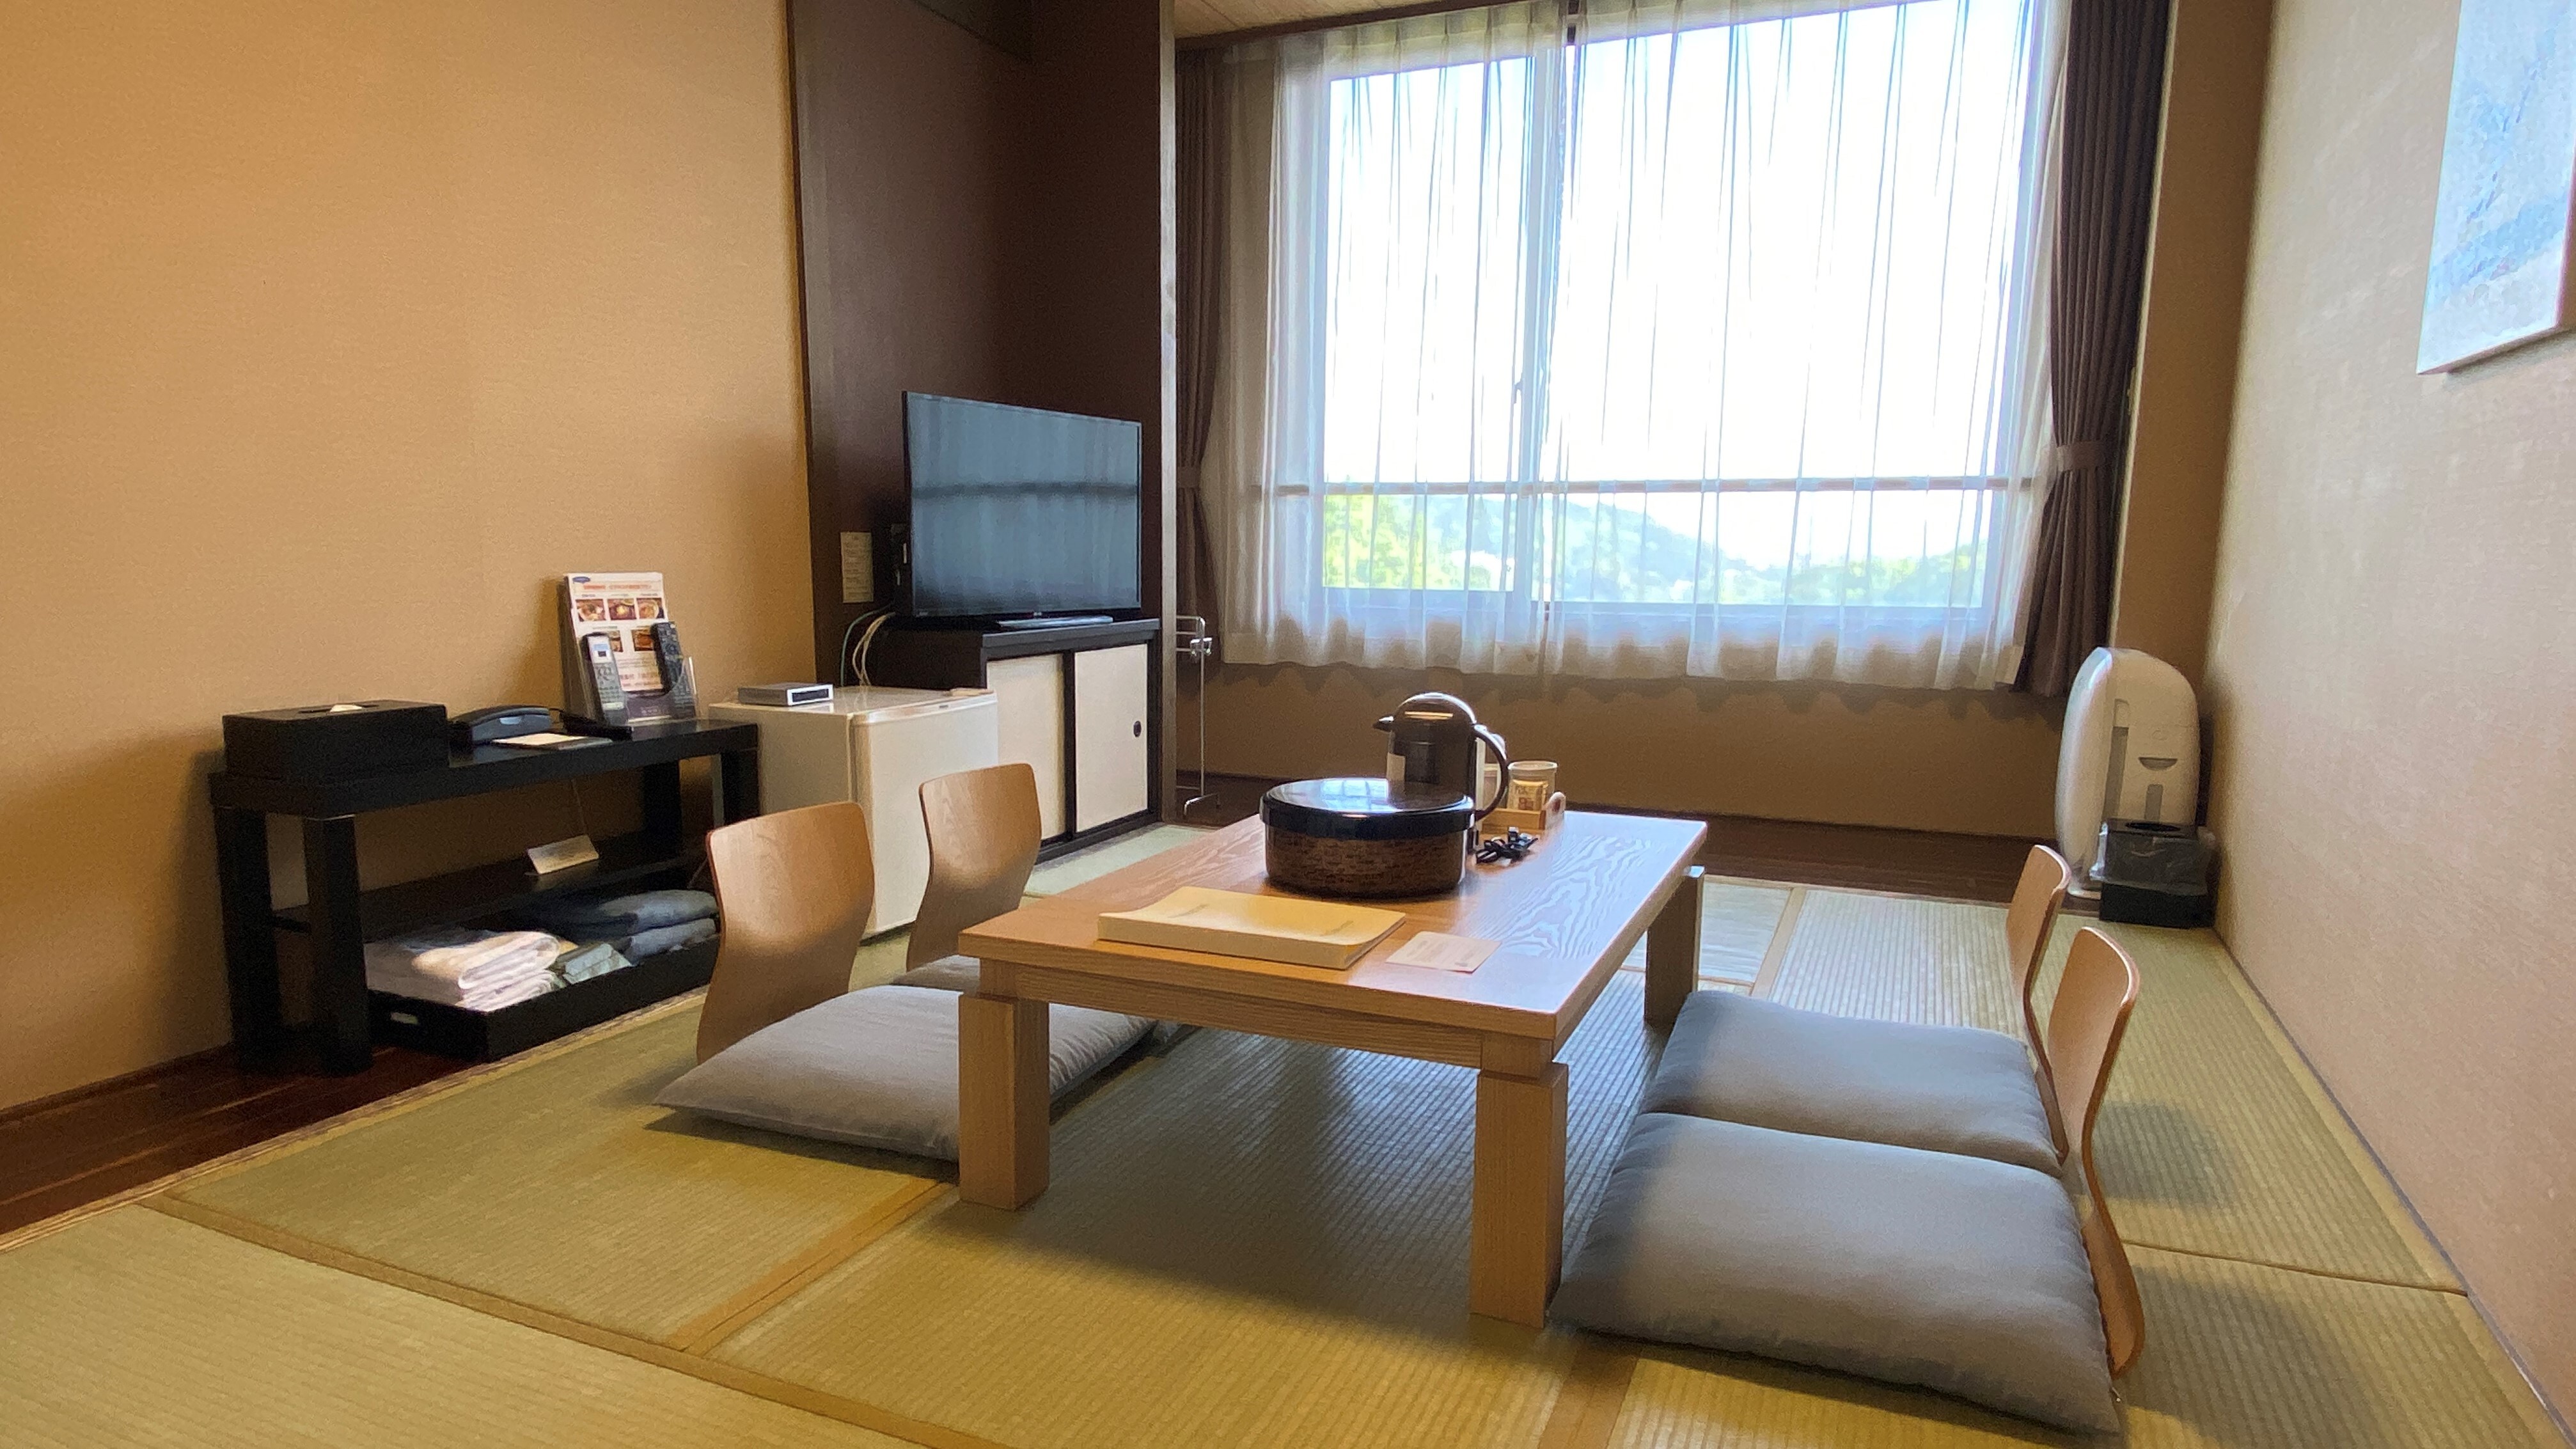 Kamar bergaya Jepang 6 tikar tatami dapat menampung hingga 3 orang dewasa